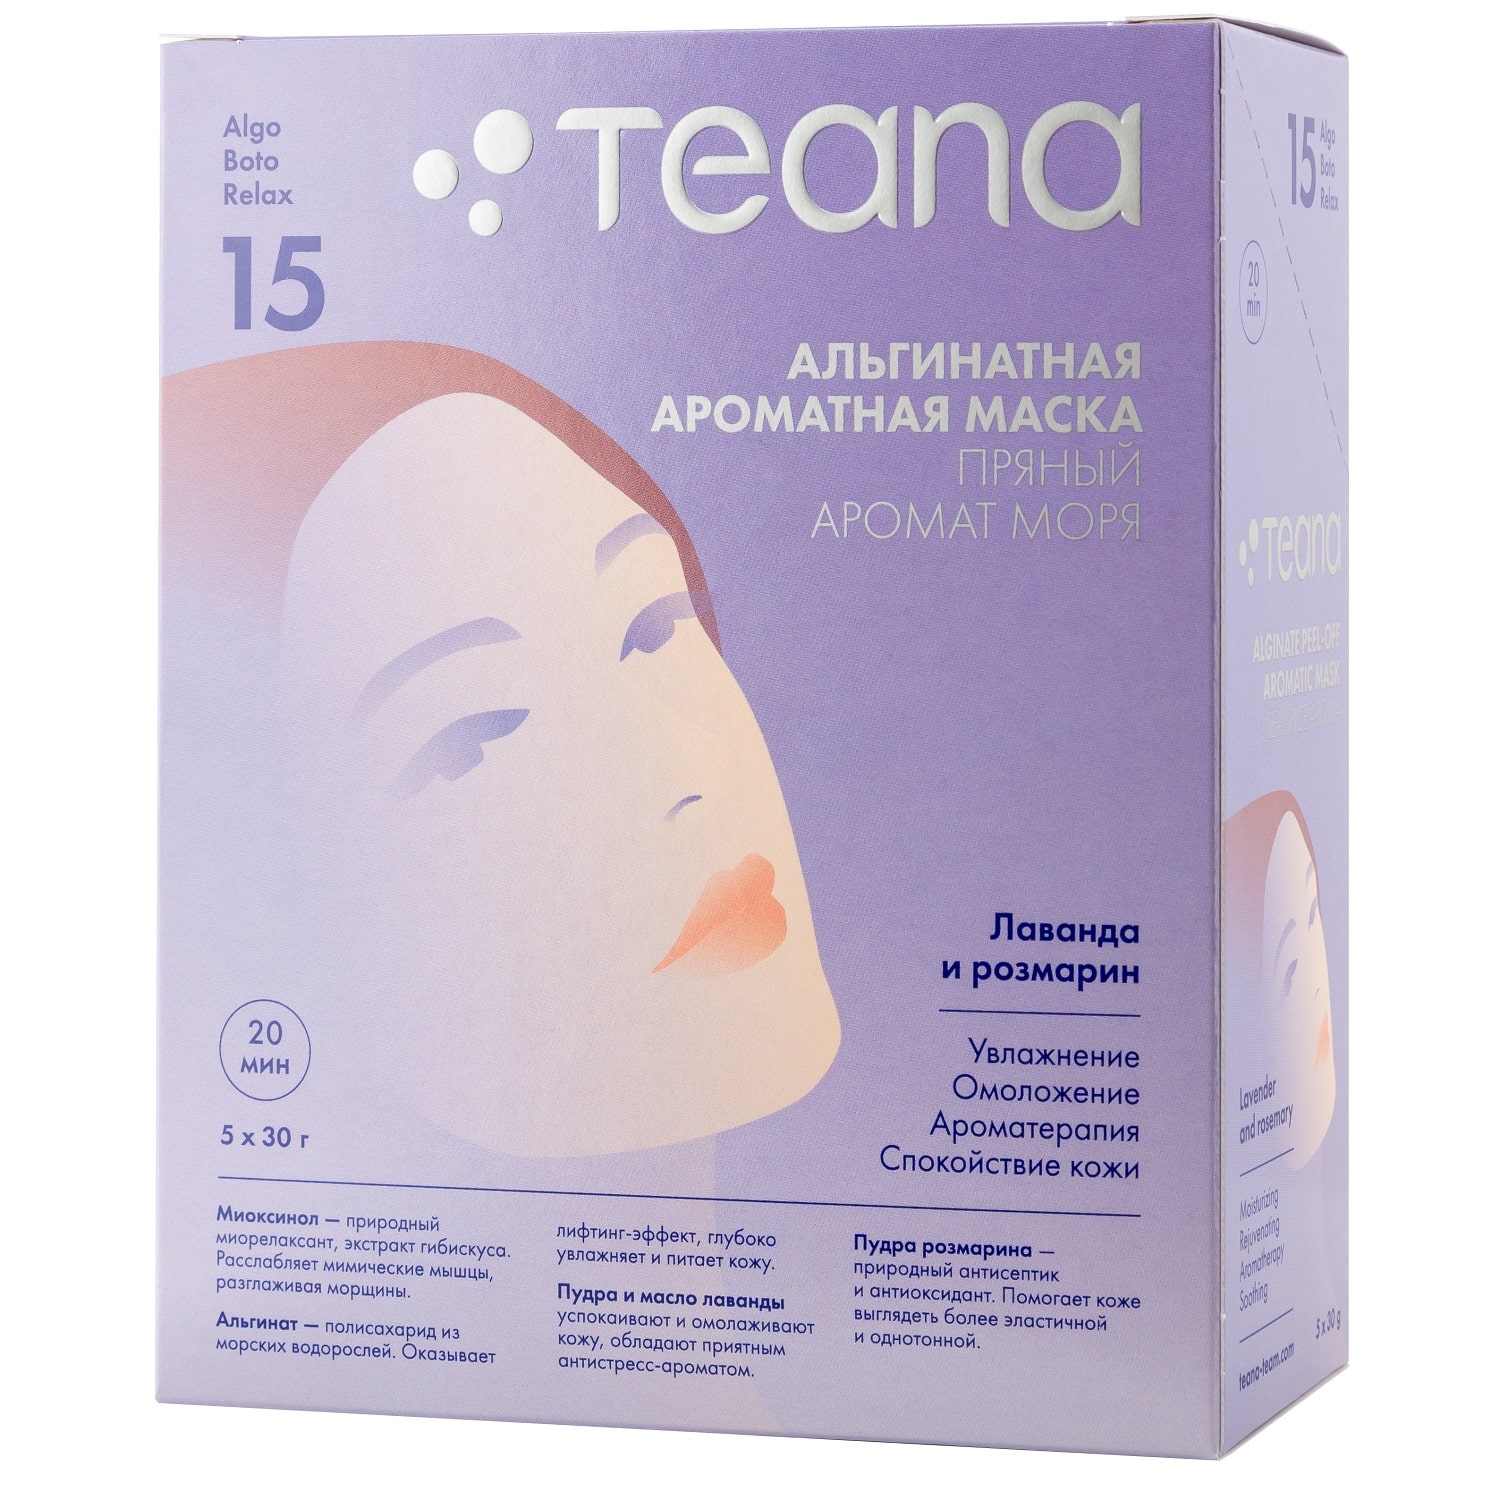 Teana Альгинатная Омолаживающая лифтинг-маска для лица Пряный аромат моря 30х5 гр (Teana, AlgoBotoRelax)